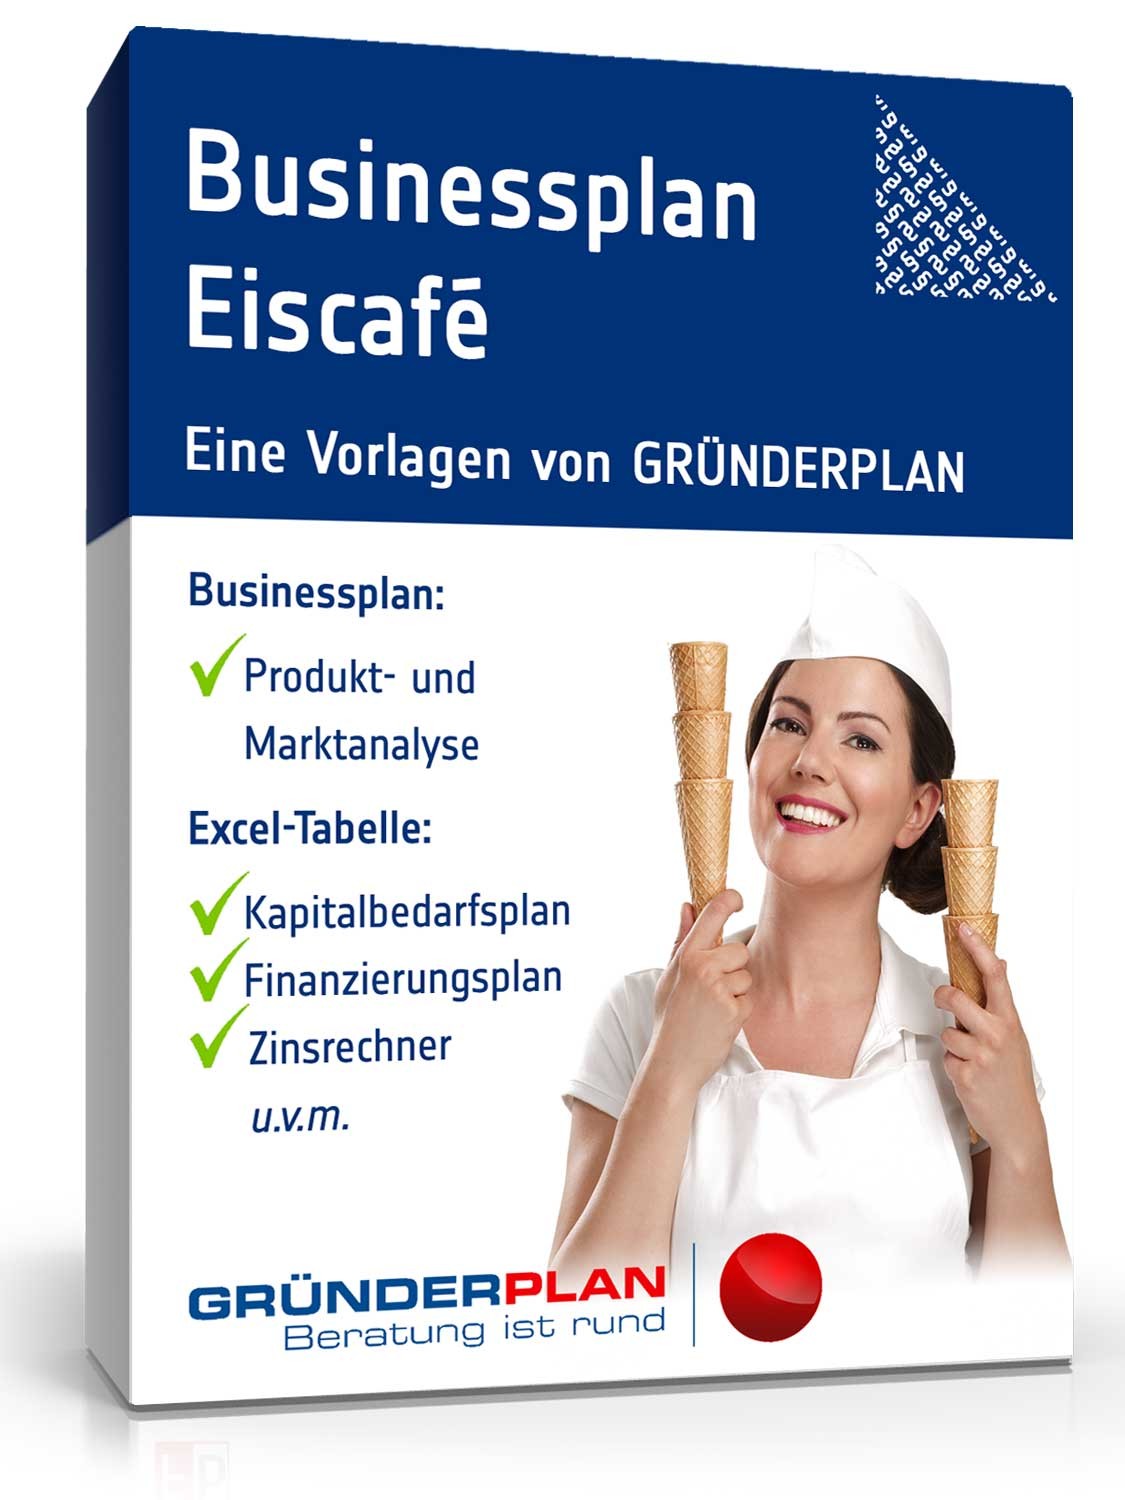 Hauptbild des Produkts: Businessplan Eiscafé von Gründerplan